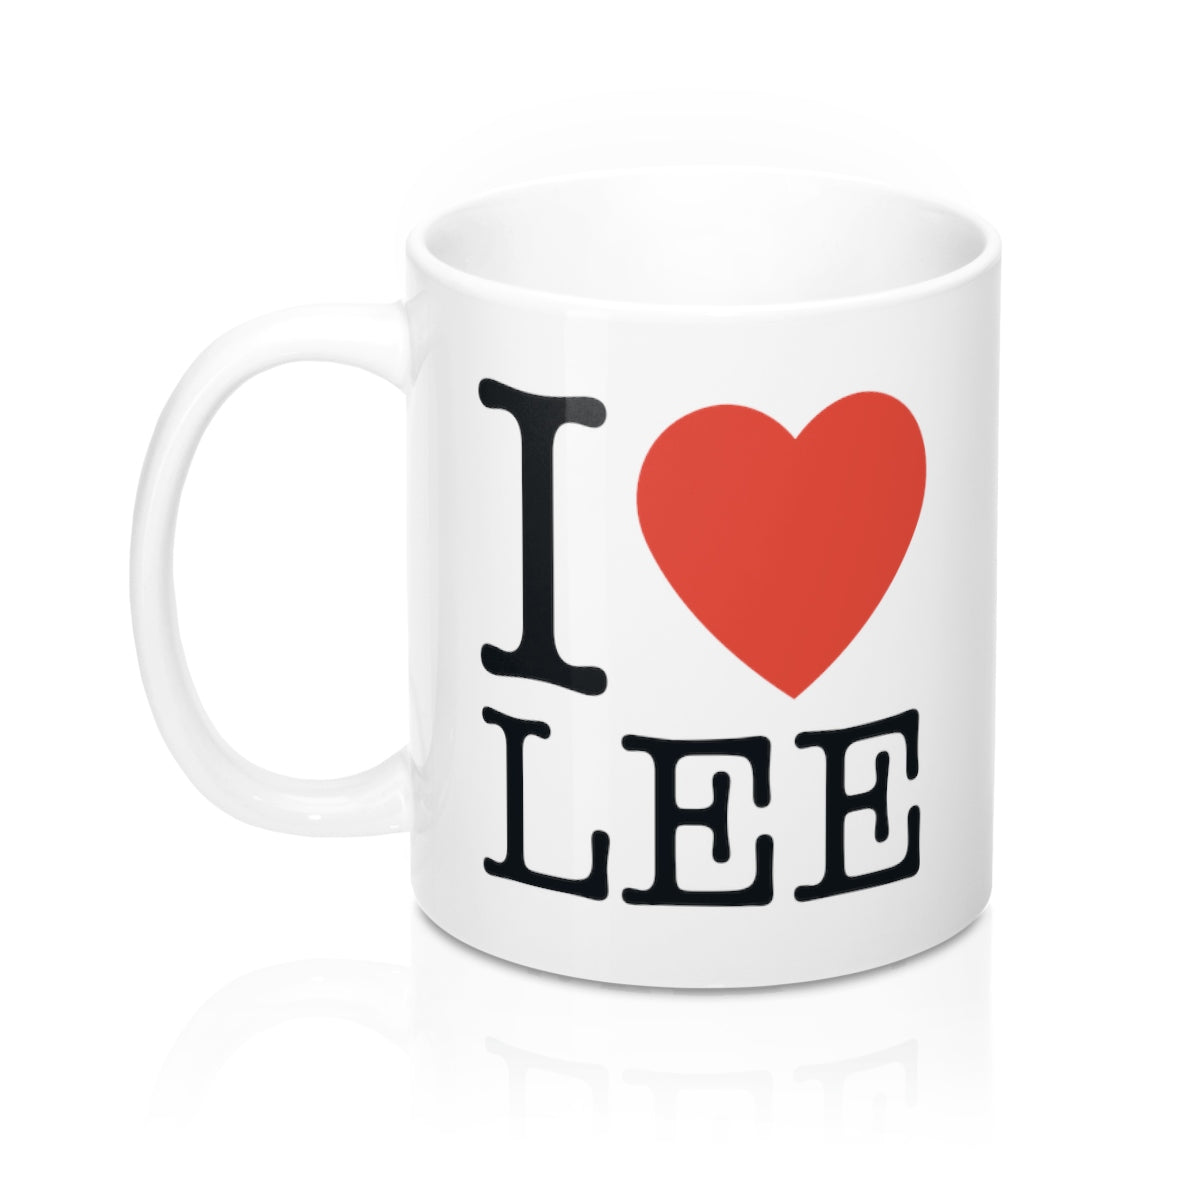 I Heart Lee Mug